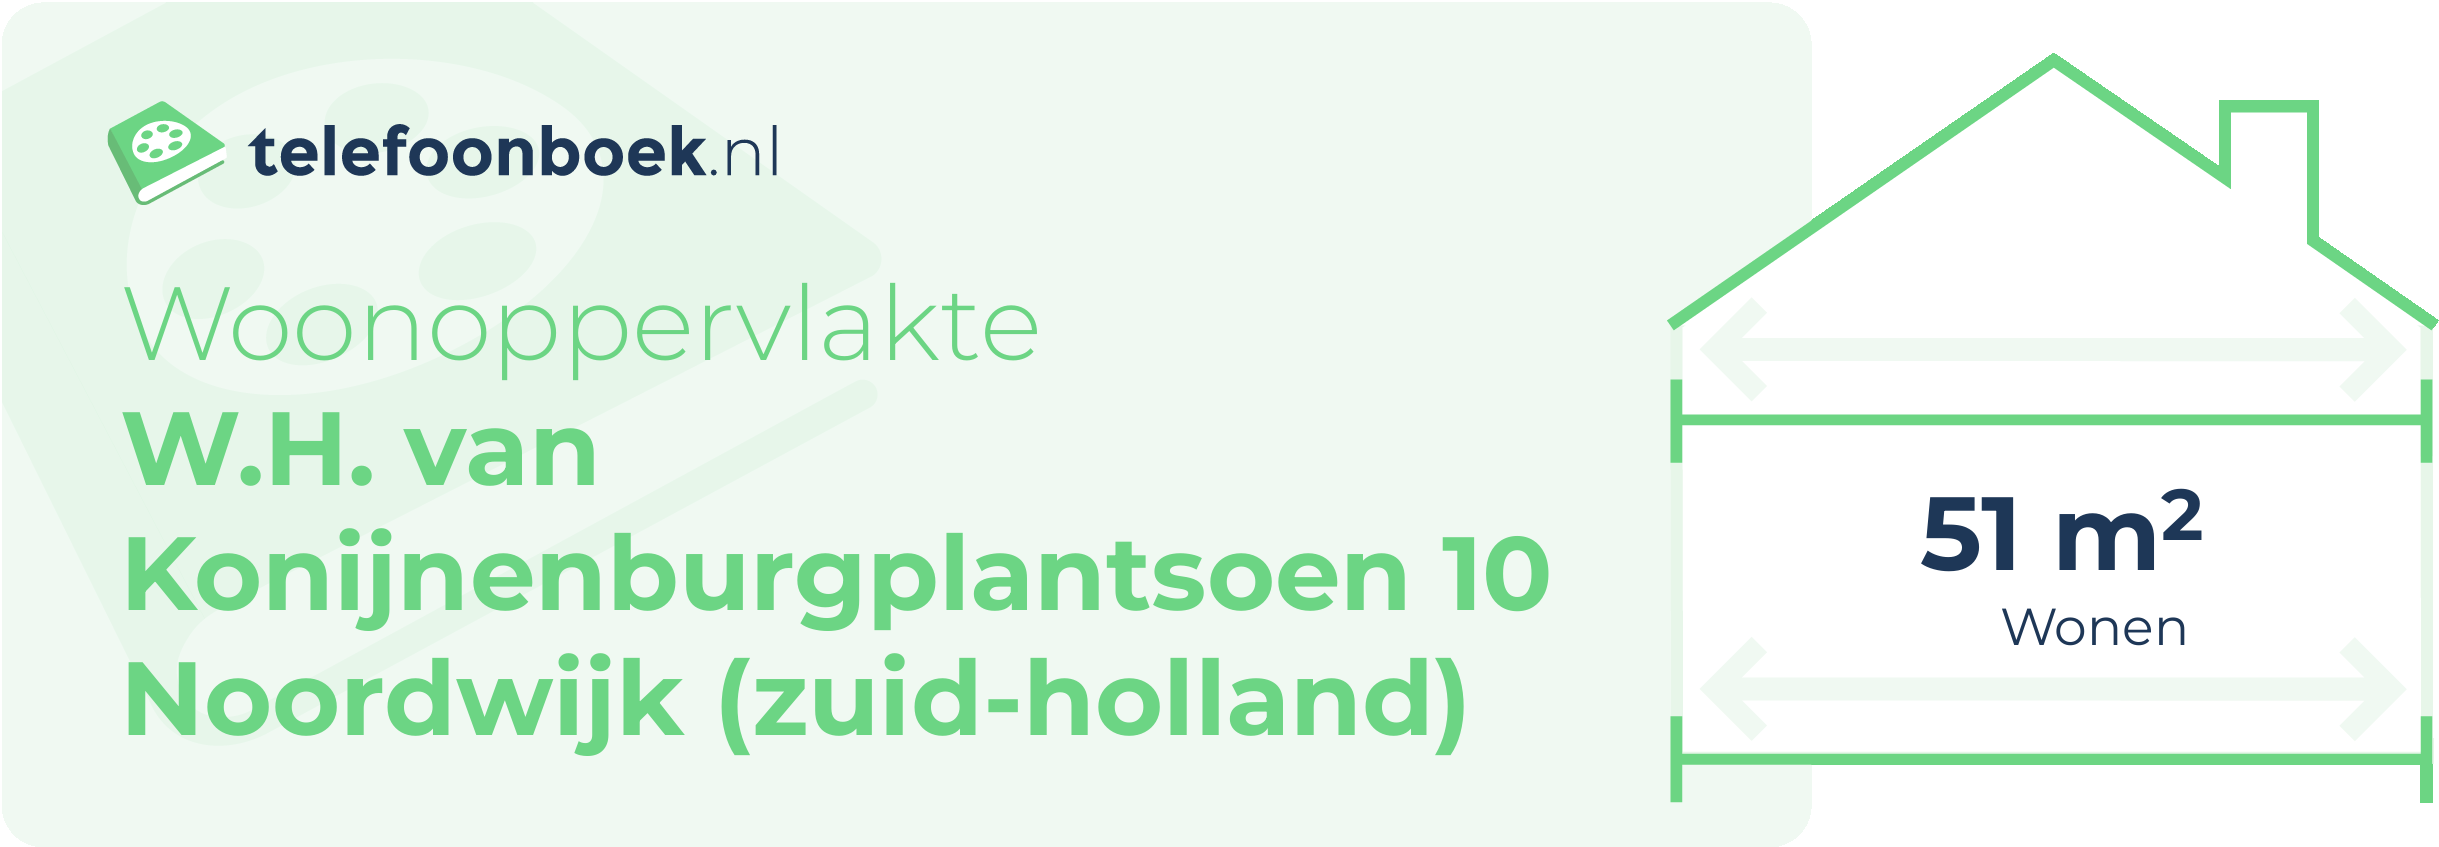 Woonoppervlakte W.H. Van Konijnenburgplantsoen 10 Noordwijk (Zuid-Holland)